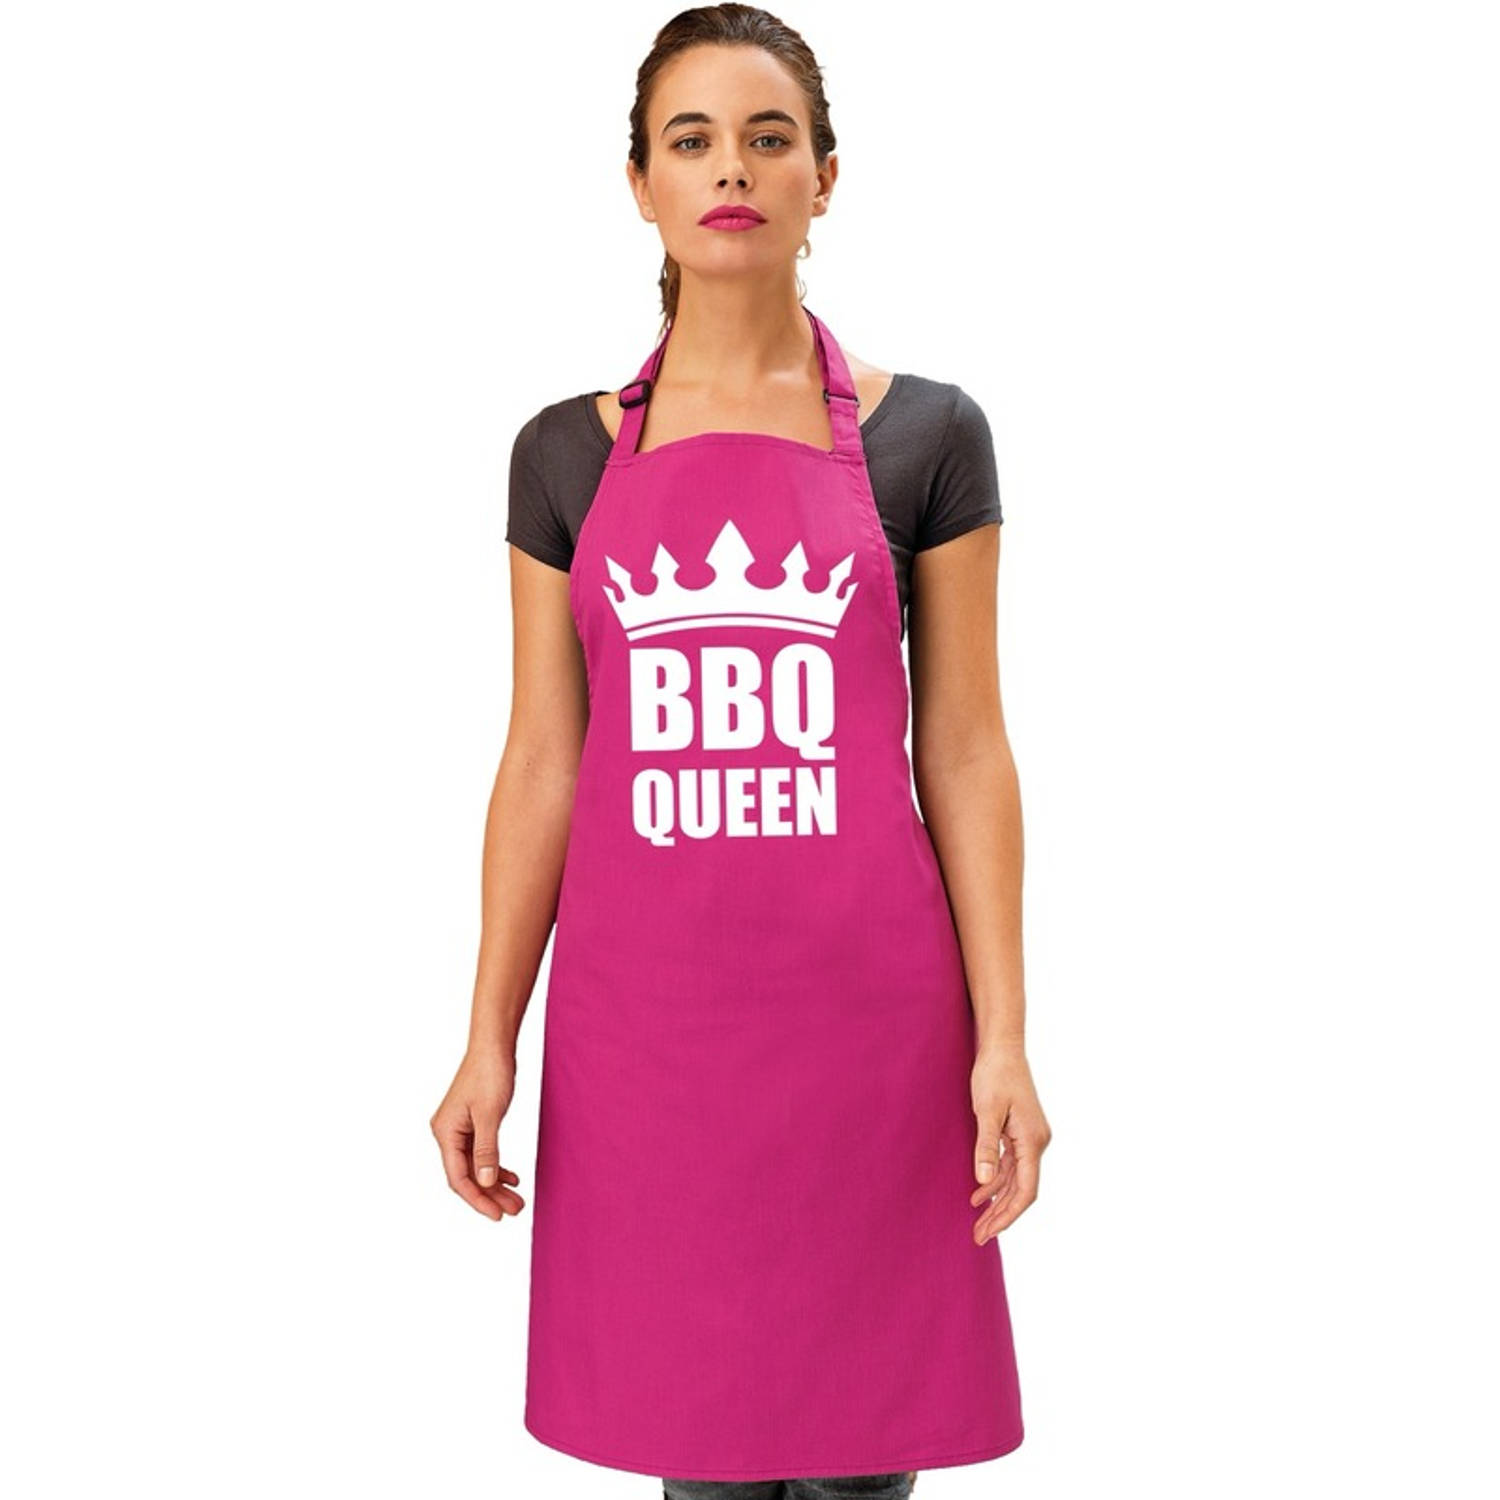 Barbecueschort BBQ Queen roze dames Feestschorten